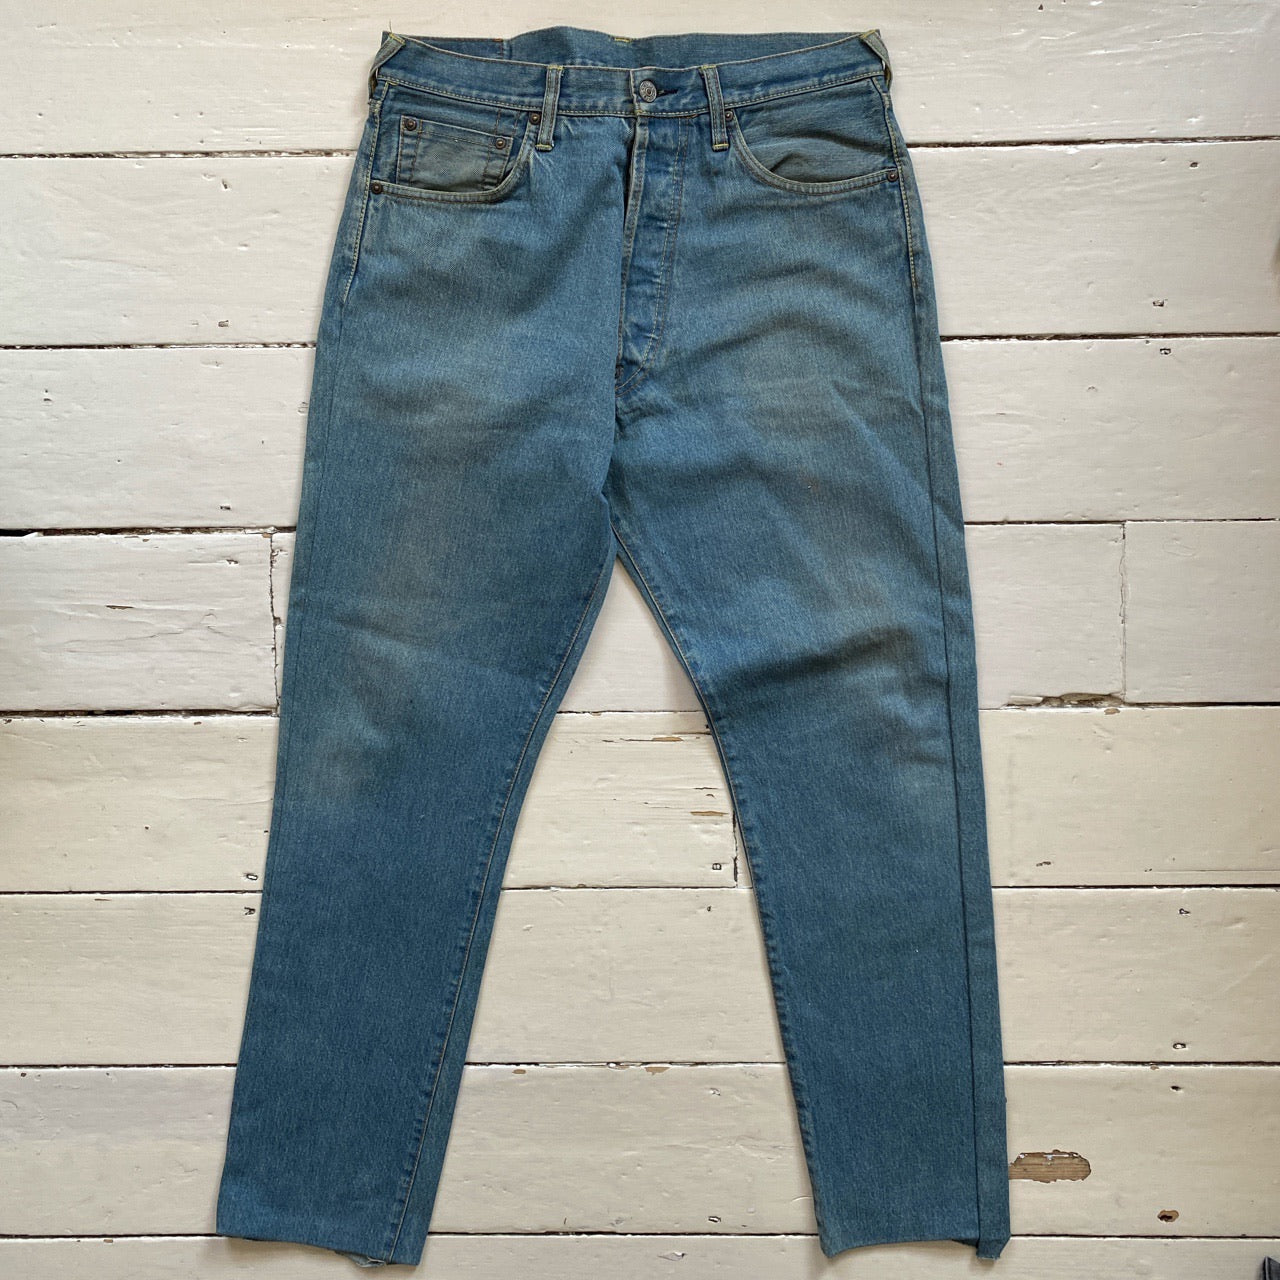 Evisu Coloured Pocket Jeans Light Blue Only (32/31)